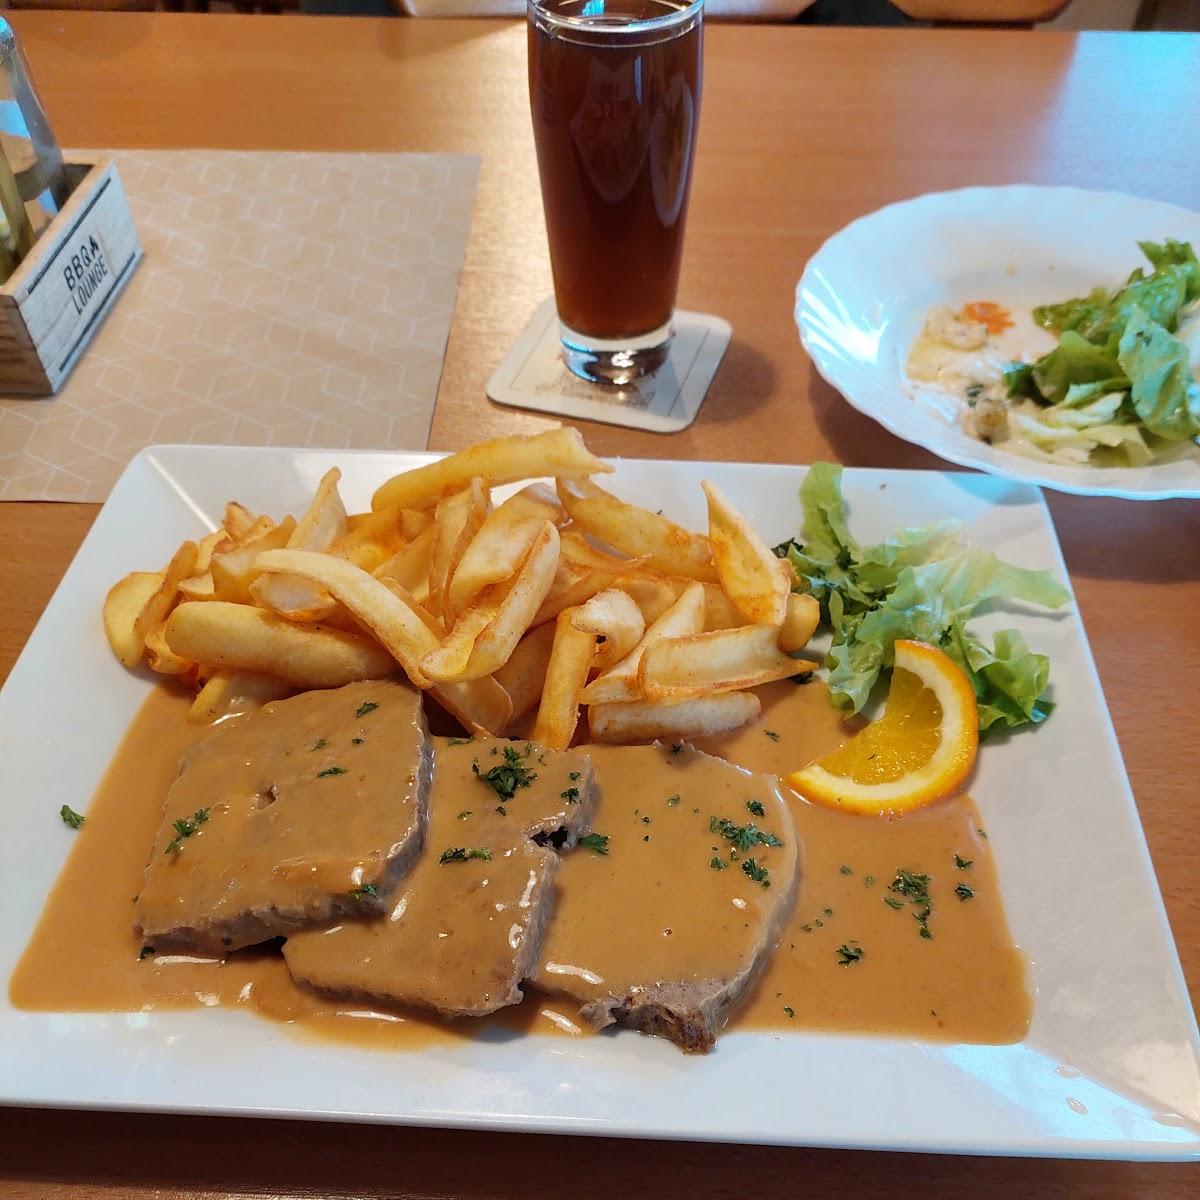 Restaurant "Gaststätte Reiterstübchen mit täglichem Stammessen ab € 8,80" in Ludwigshafen am Rhein